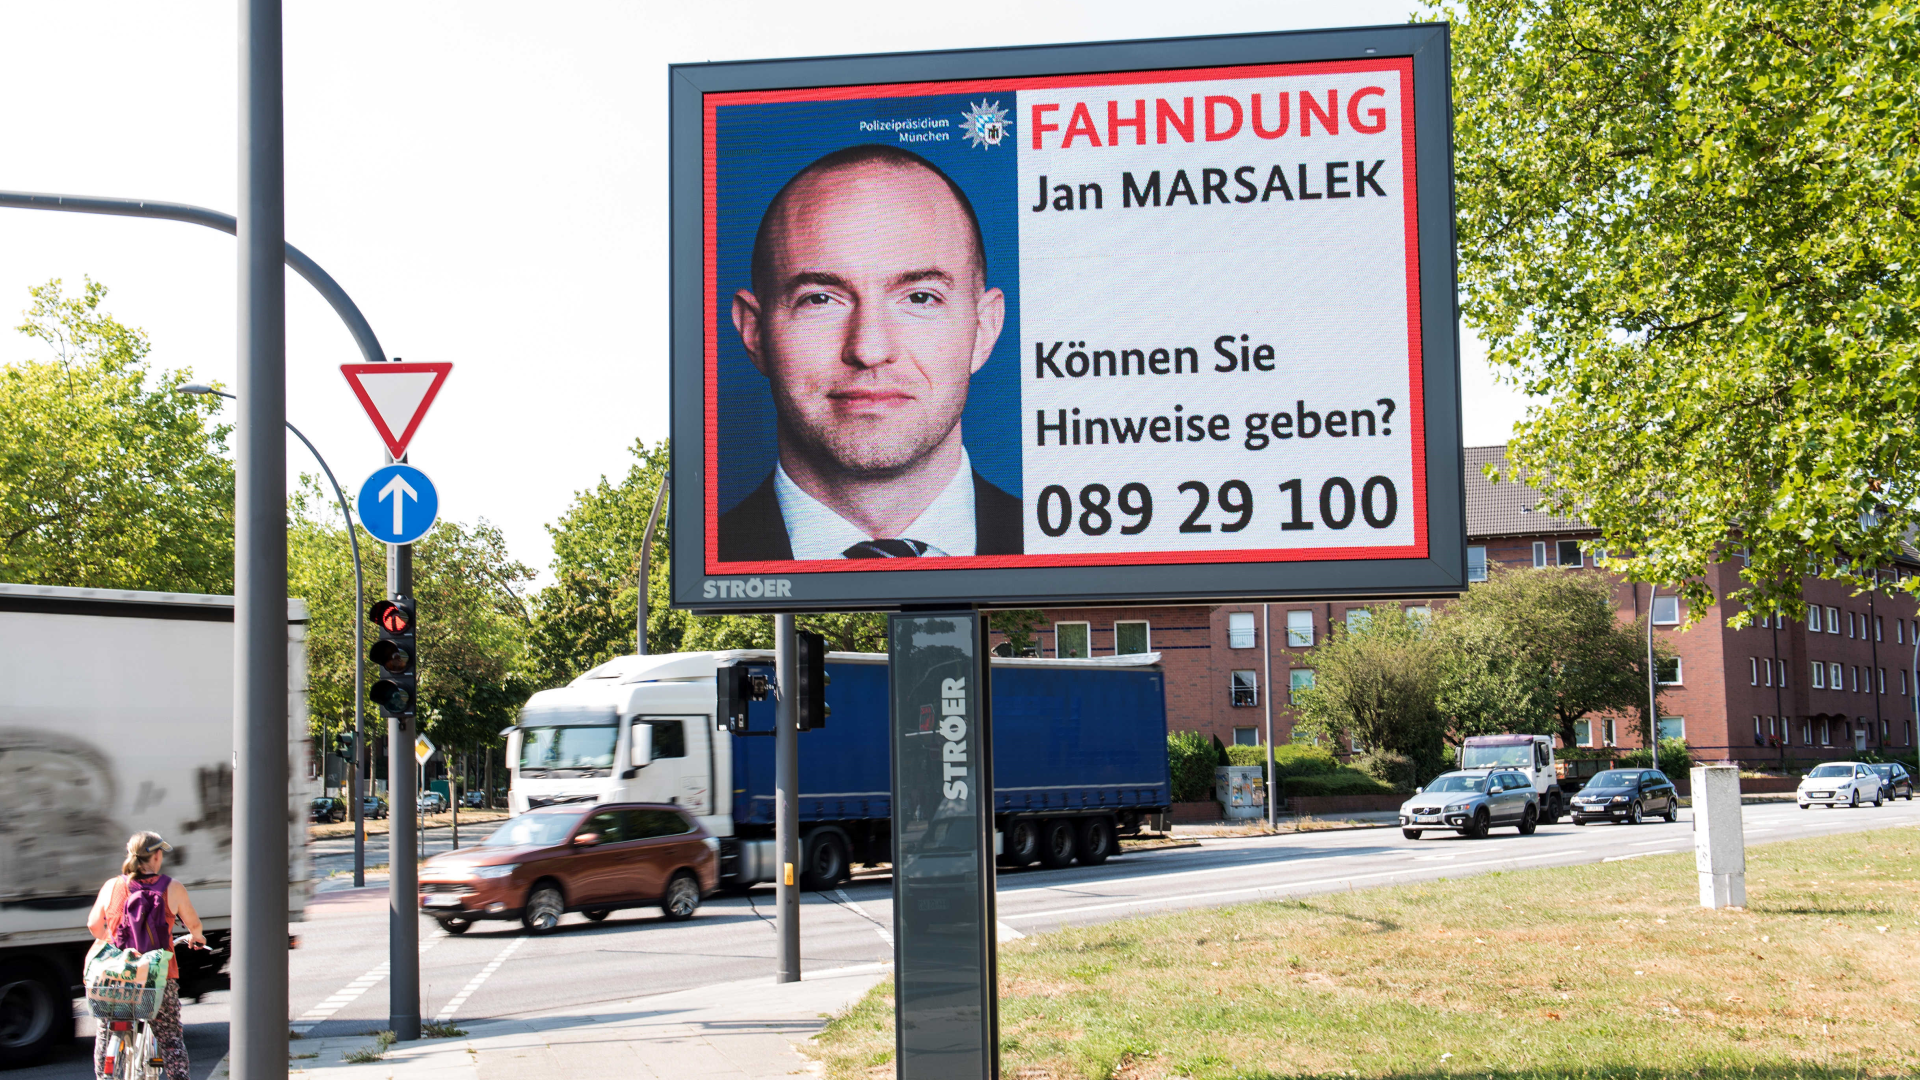 Ein Fahndungsaufruf nach Jan Marsalek. | Foto: picture alliance/dpa